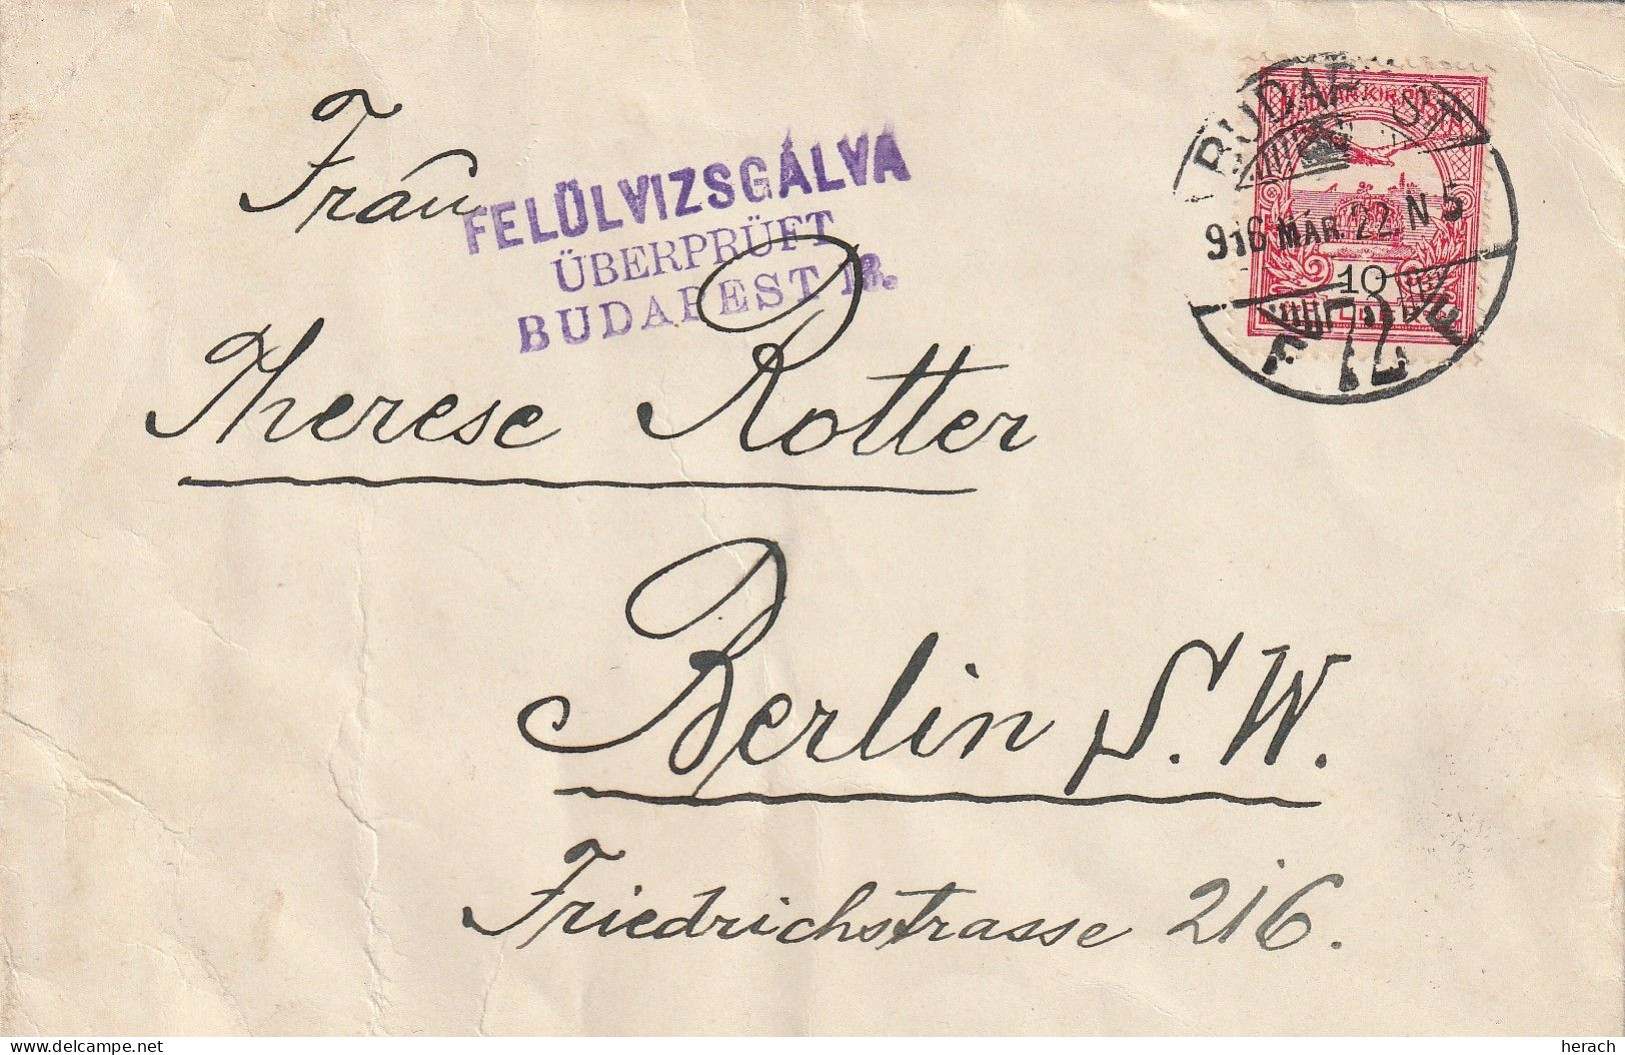 Hongrie Lettre Censurée Pour L'Allemagne 1916 - Lettres & Documents